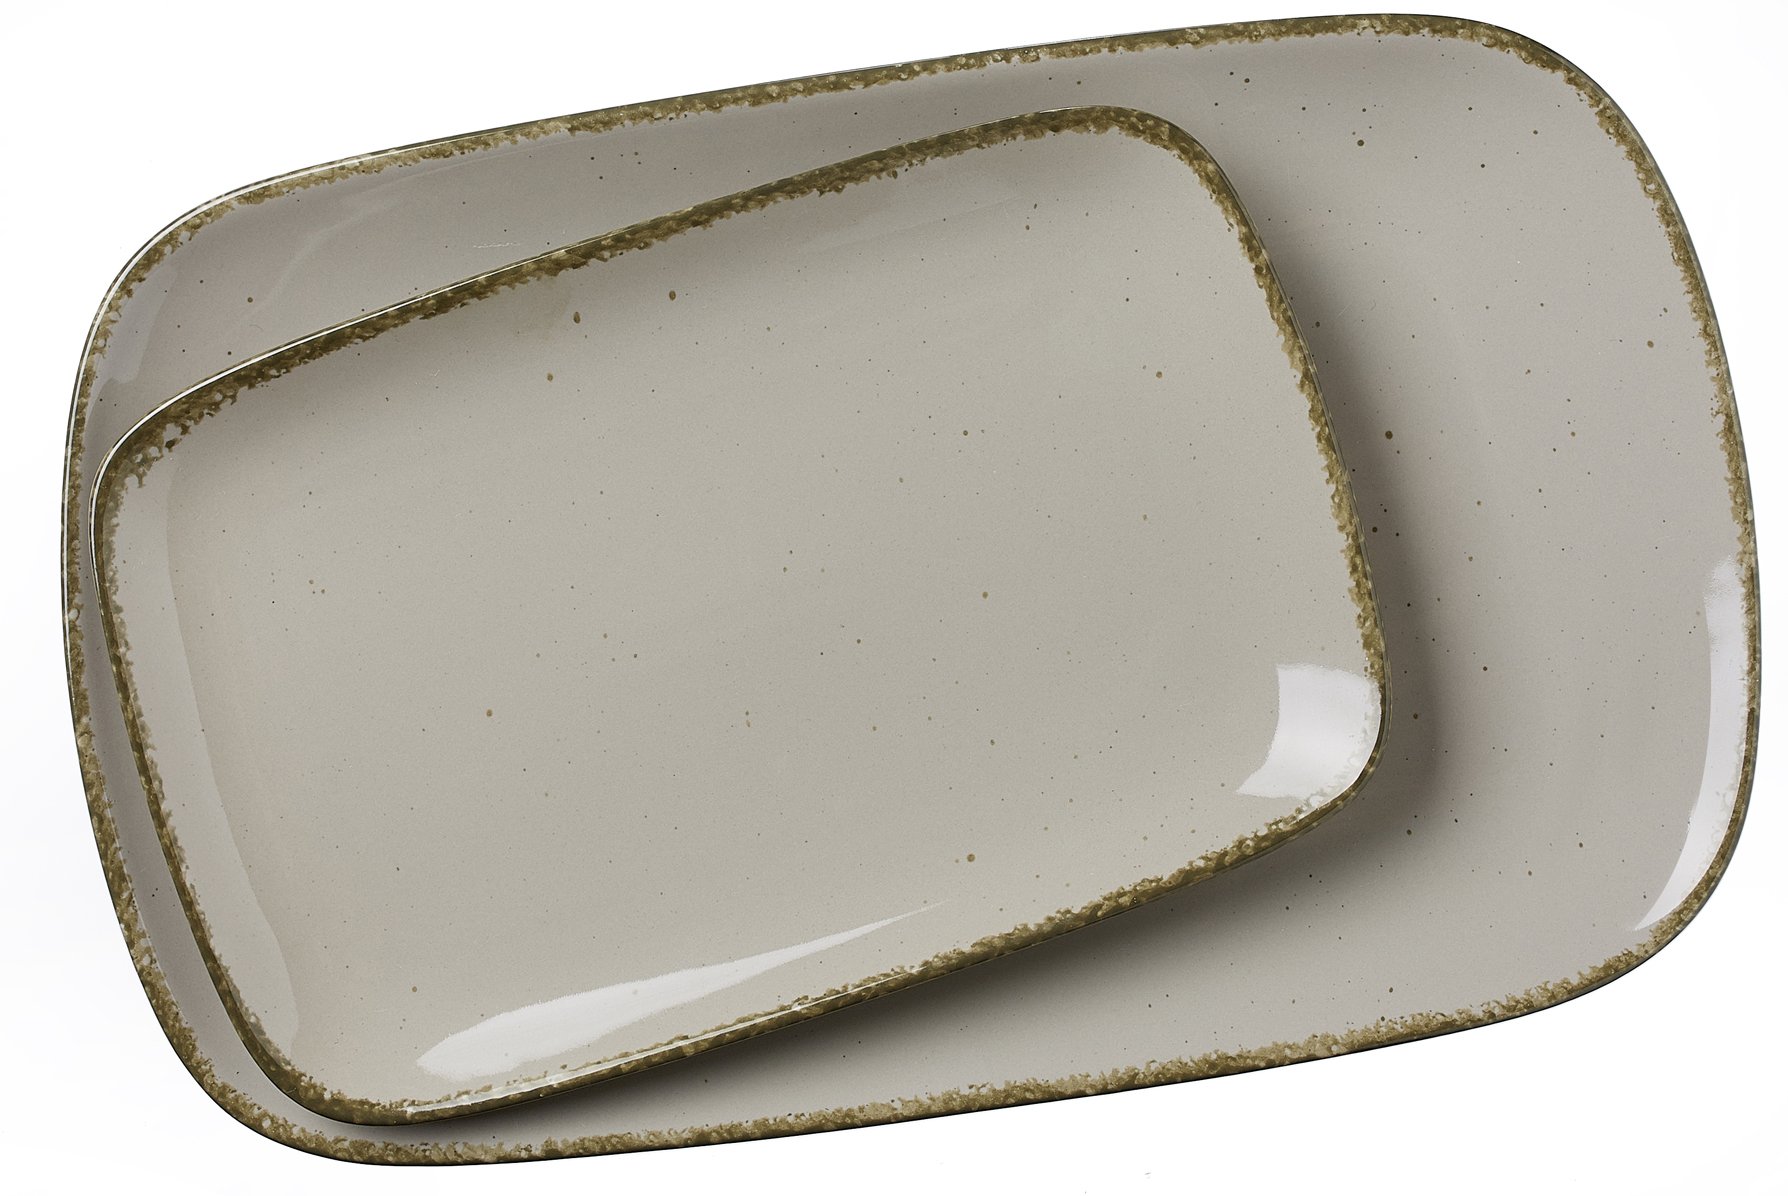 Ritzenhoff & Breker Porzellan Servierplatten-Set Casa, 2-teilg, 24x15,5 cm und 33x20 cm, Nougat